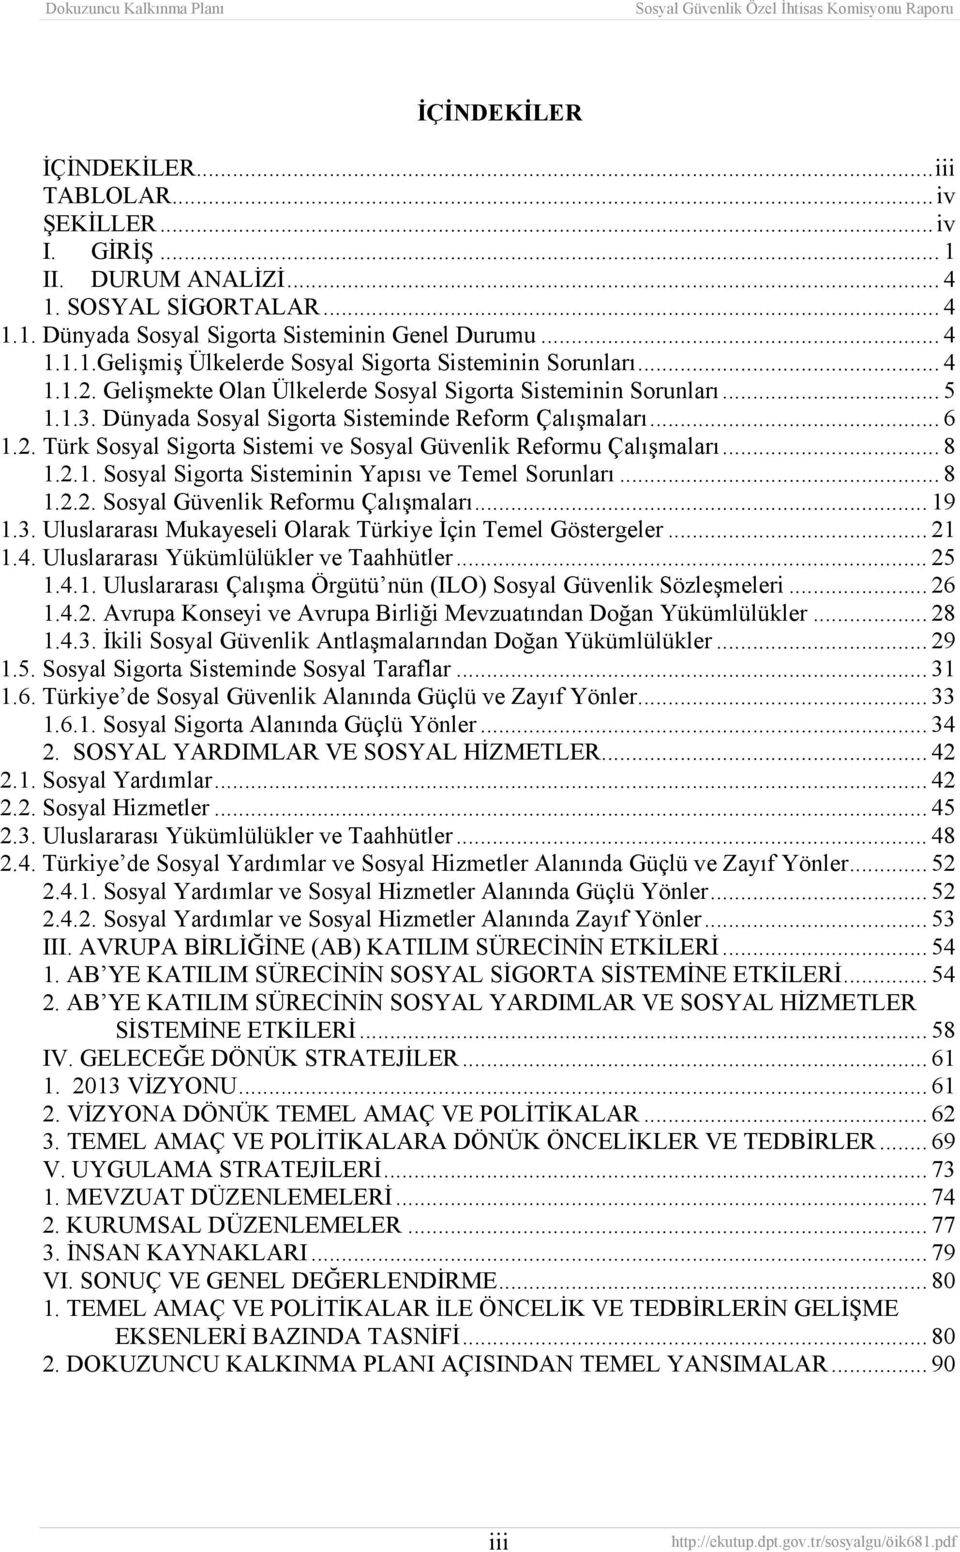 .. 8 1.2.1. Sosyal Sigorta Sisteminin Yapısı ve Temel Sorunları... 8 1.2.2. Sosyal Güvenlik Reformu Çalışmaları... 19 1.3. Uluslararası Mukayeseli Olarak Türkiye İçin Temel Göstergeler... 21 1.4.